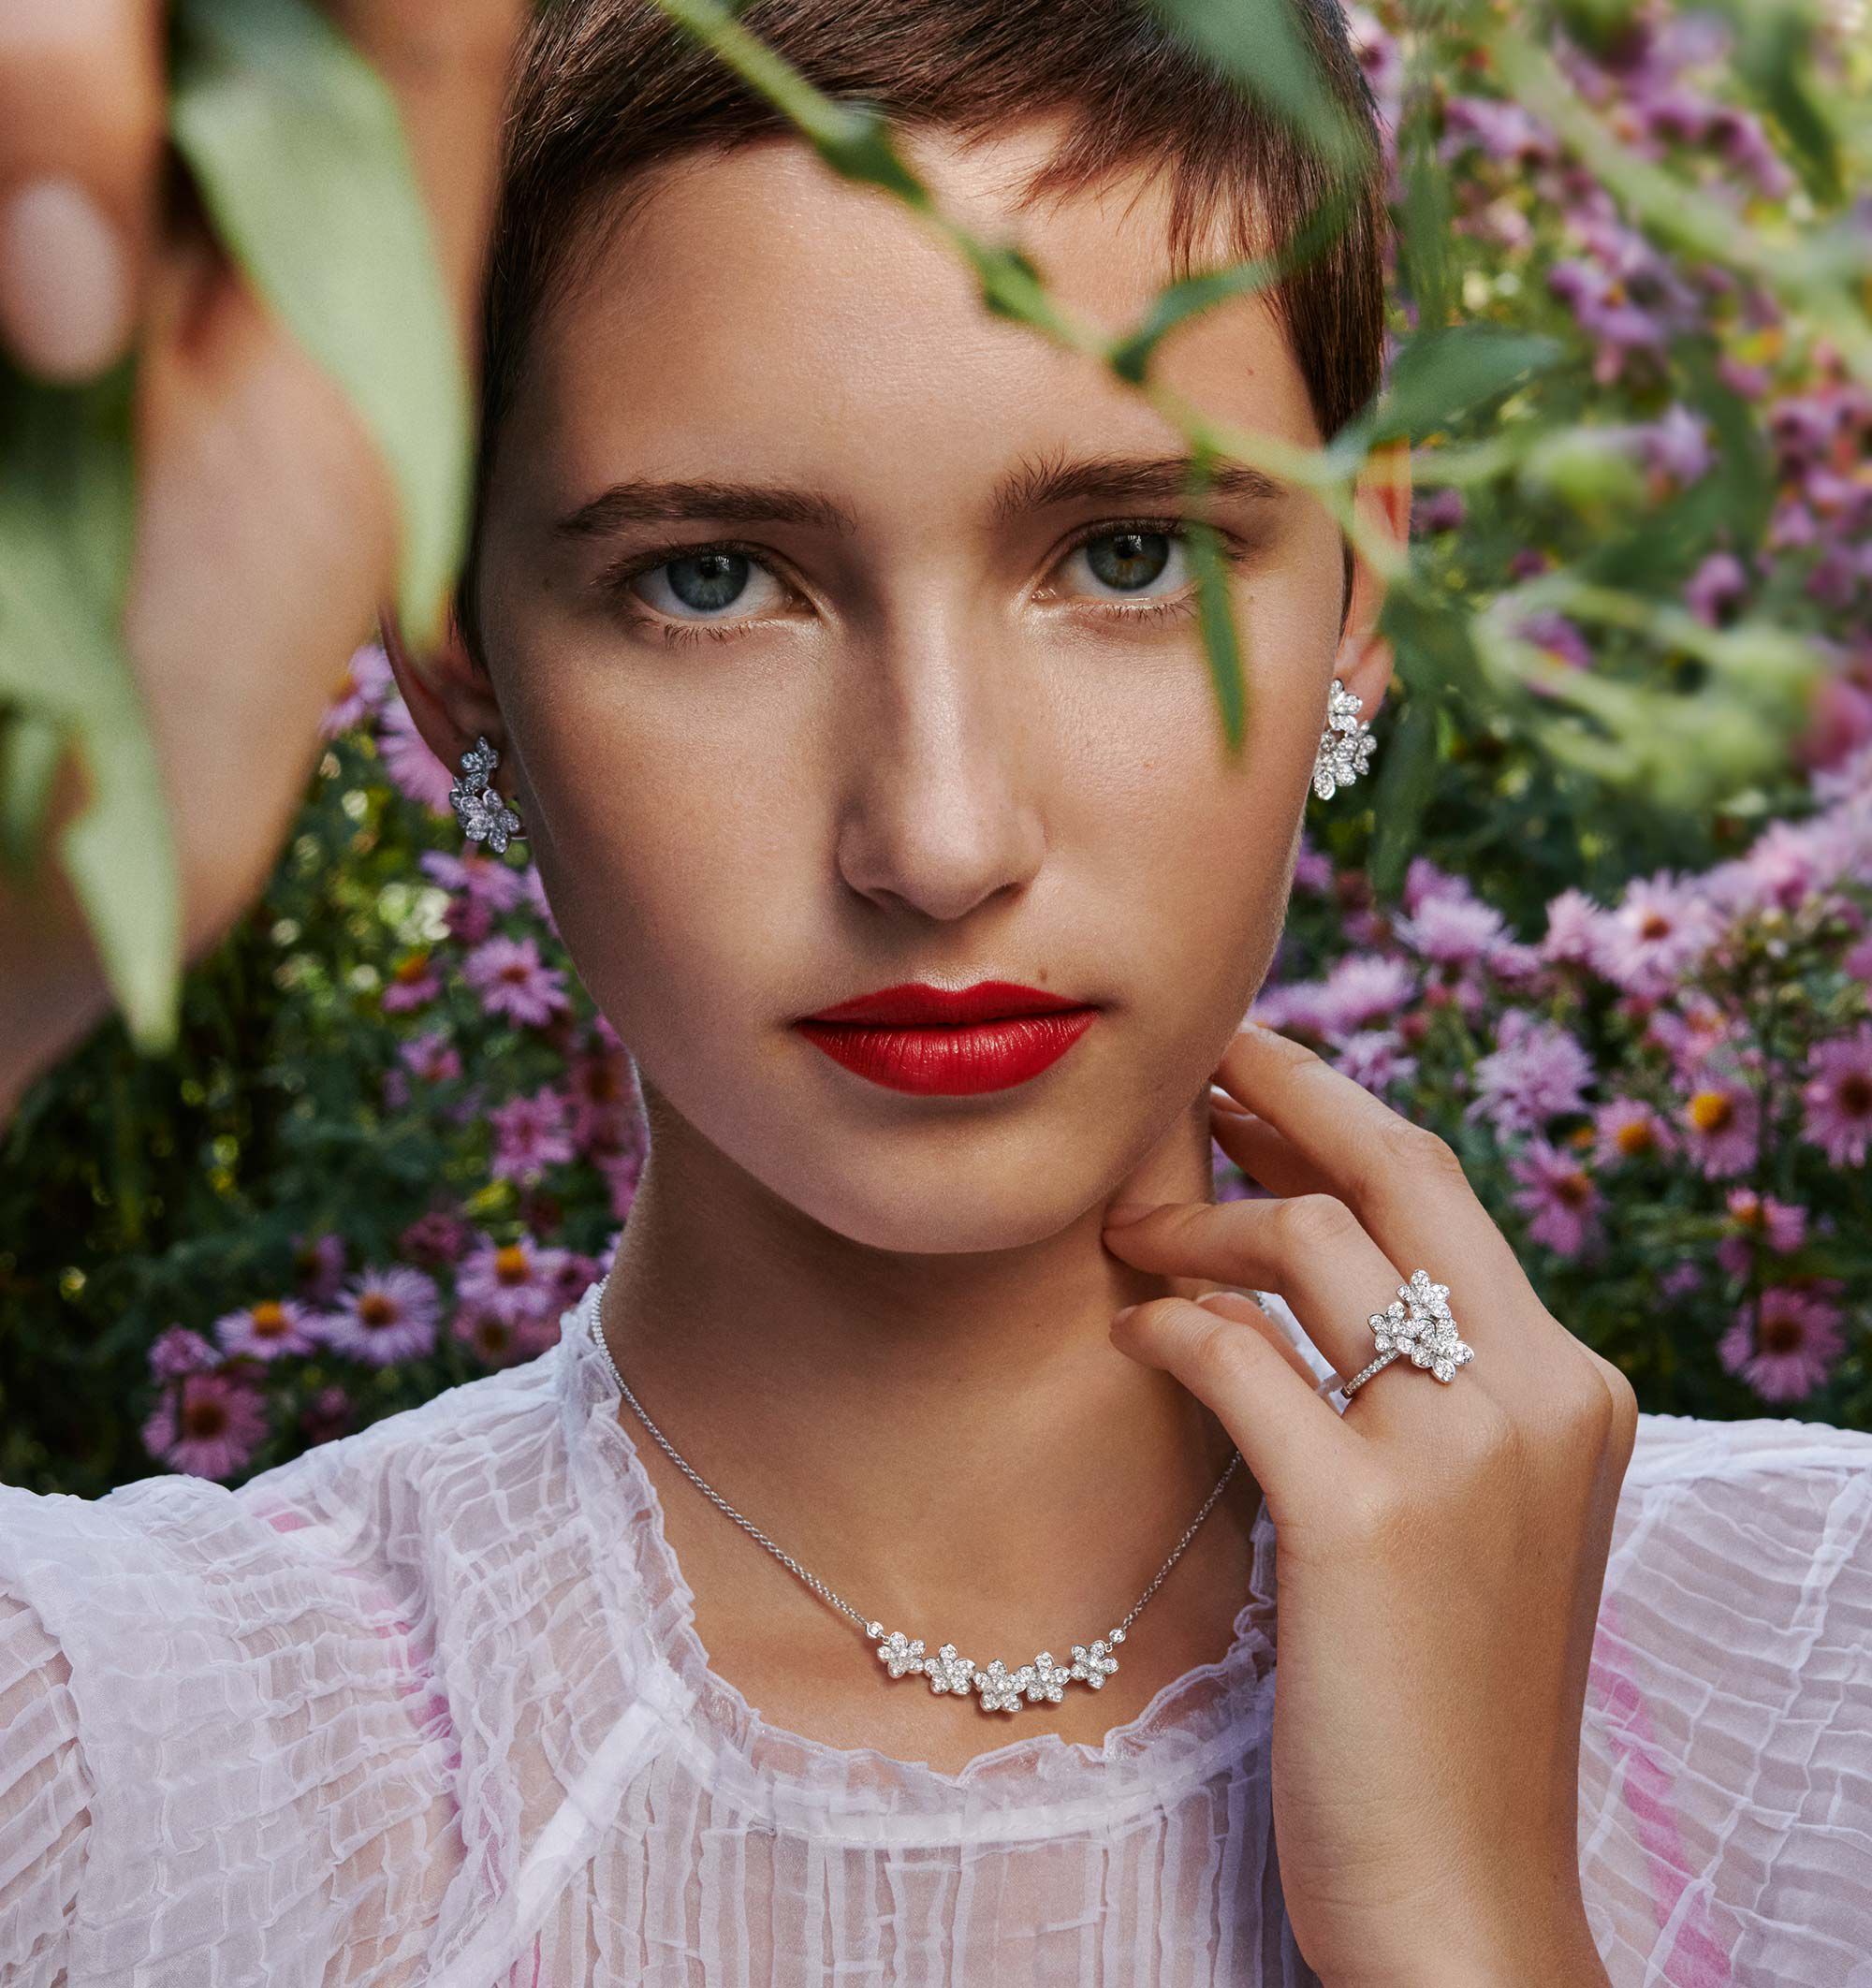 Graff model wears Wild Flower jewellery